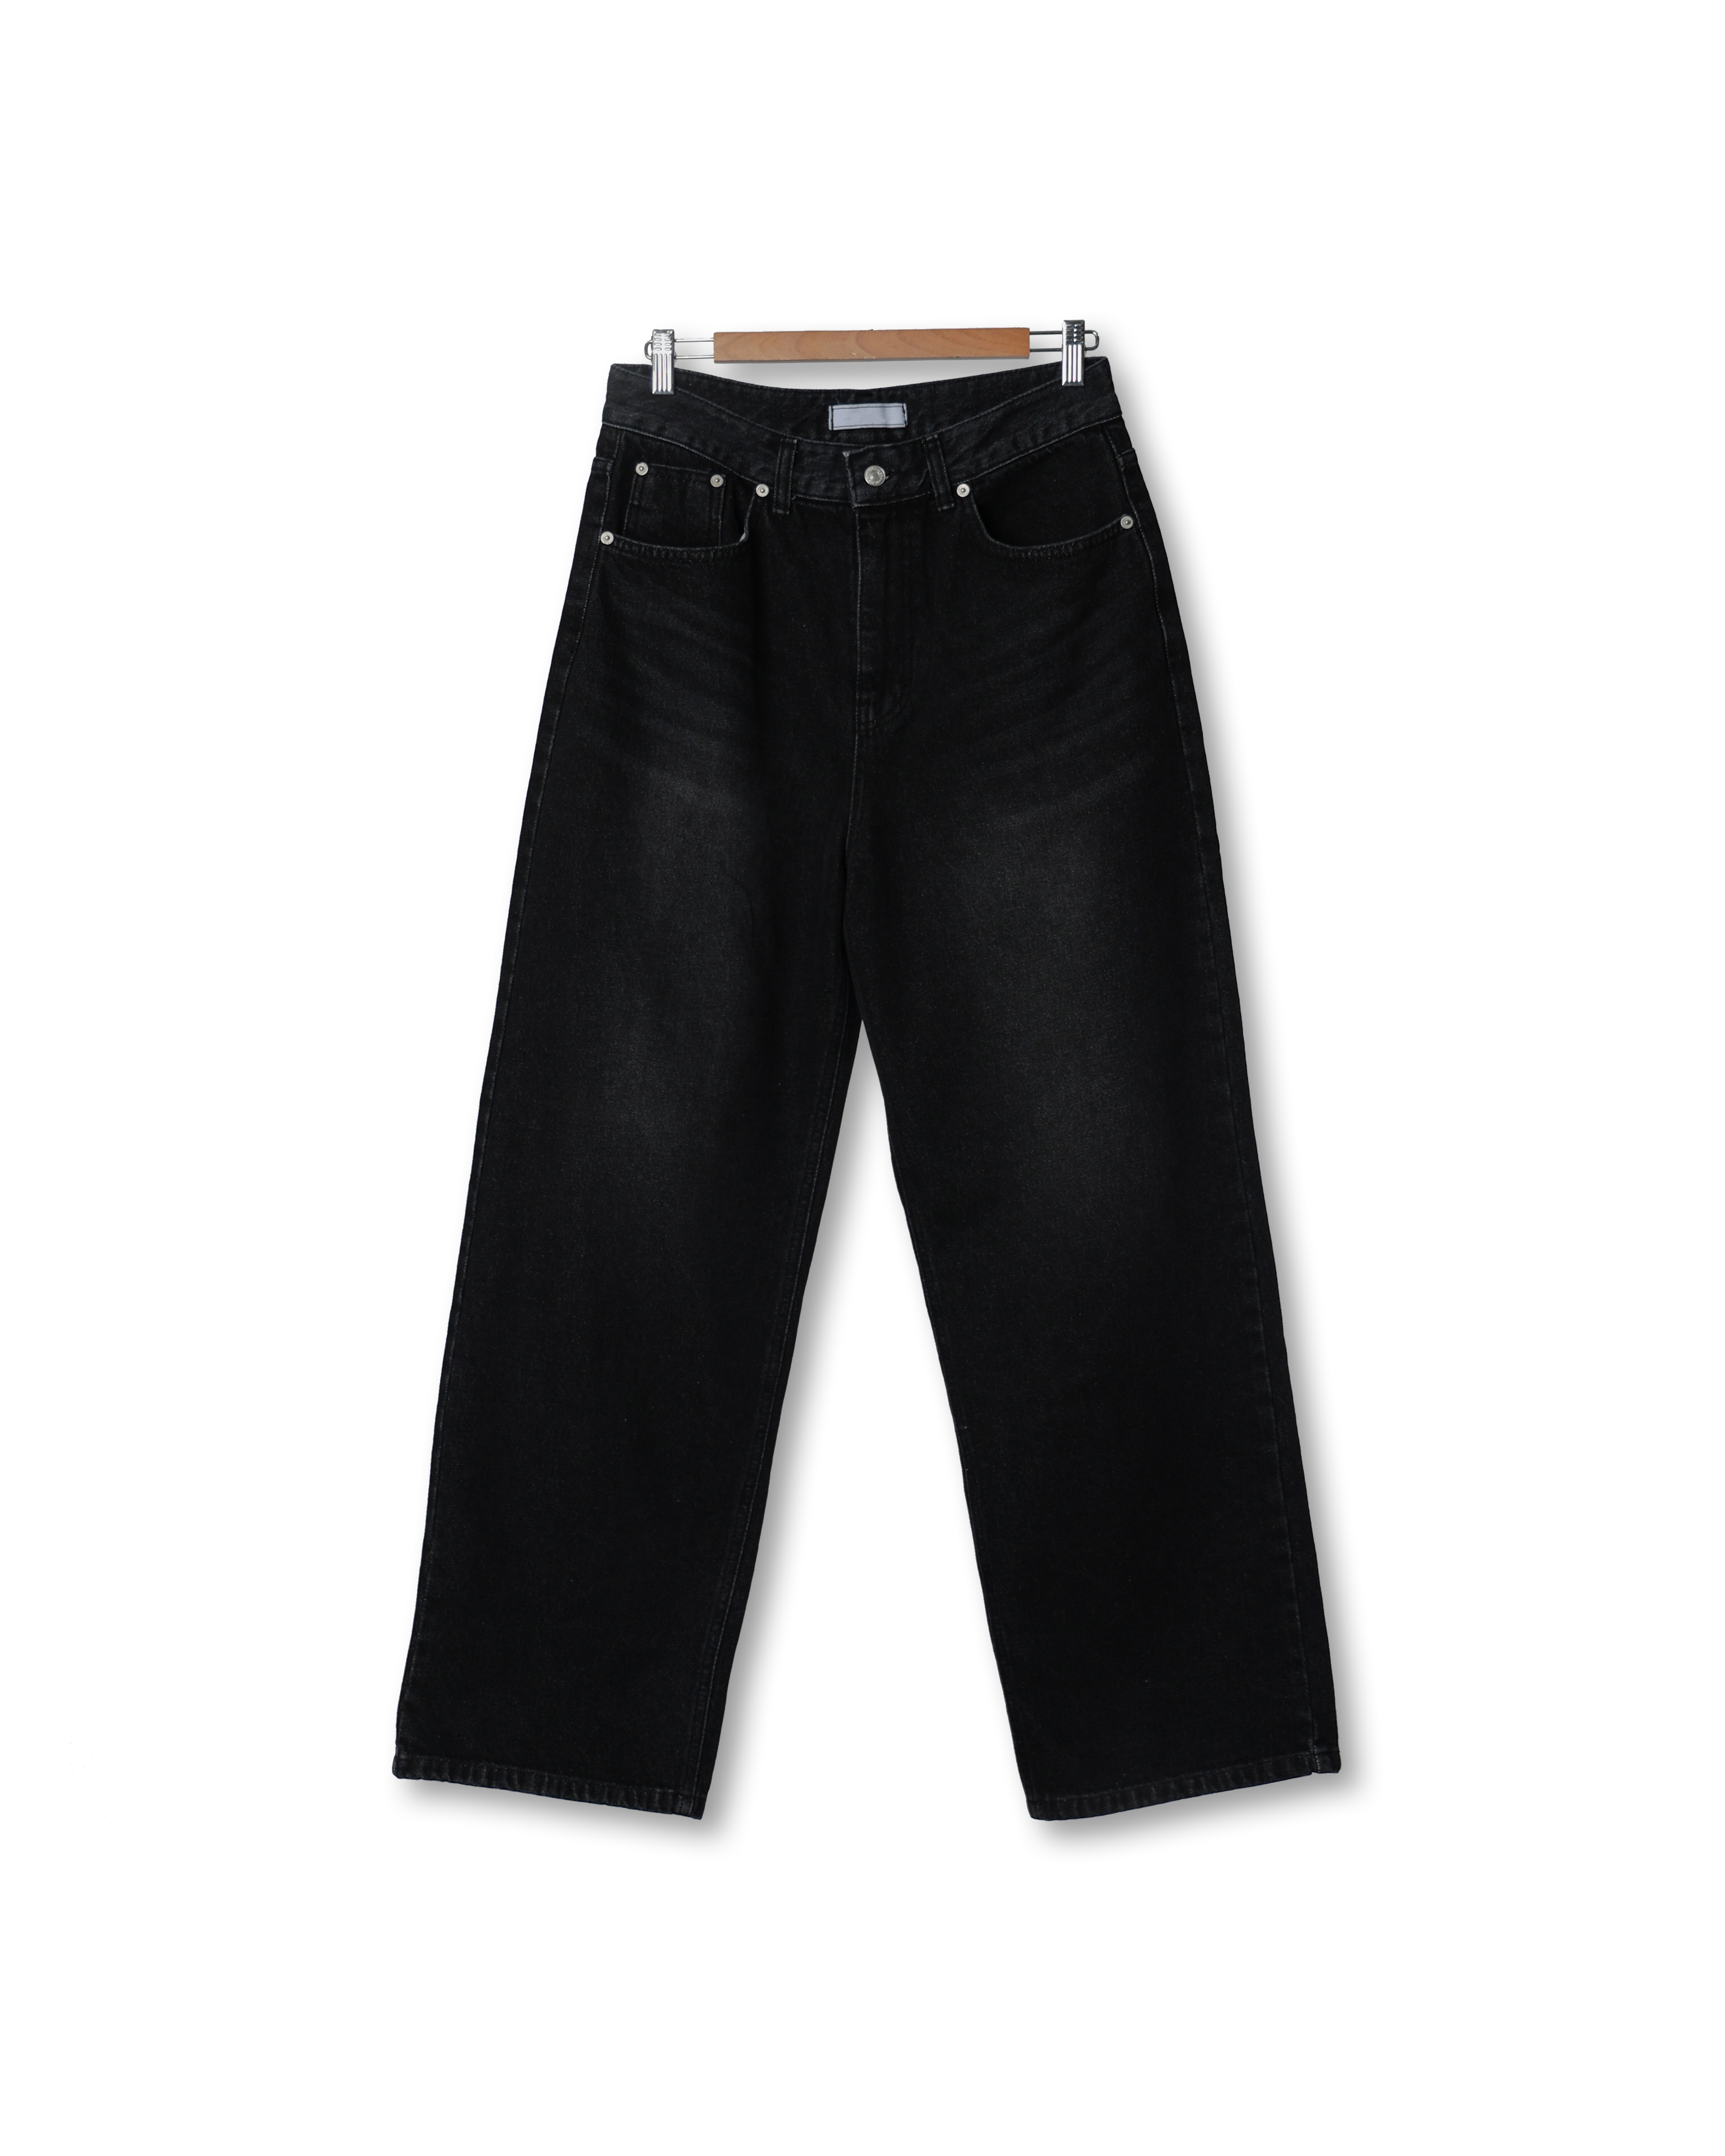 BYSTR 623 Black Washed Daily Denim Pants (Black Denim)